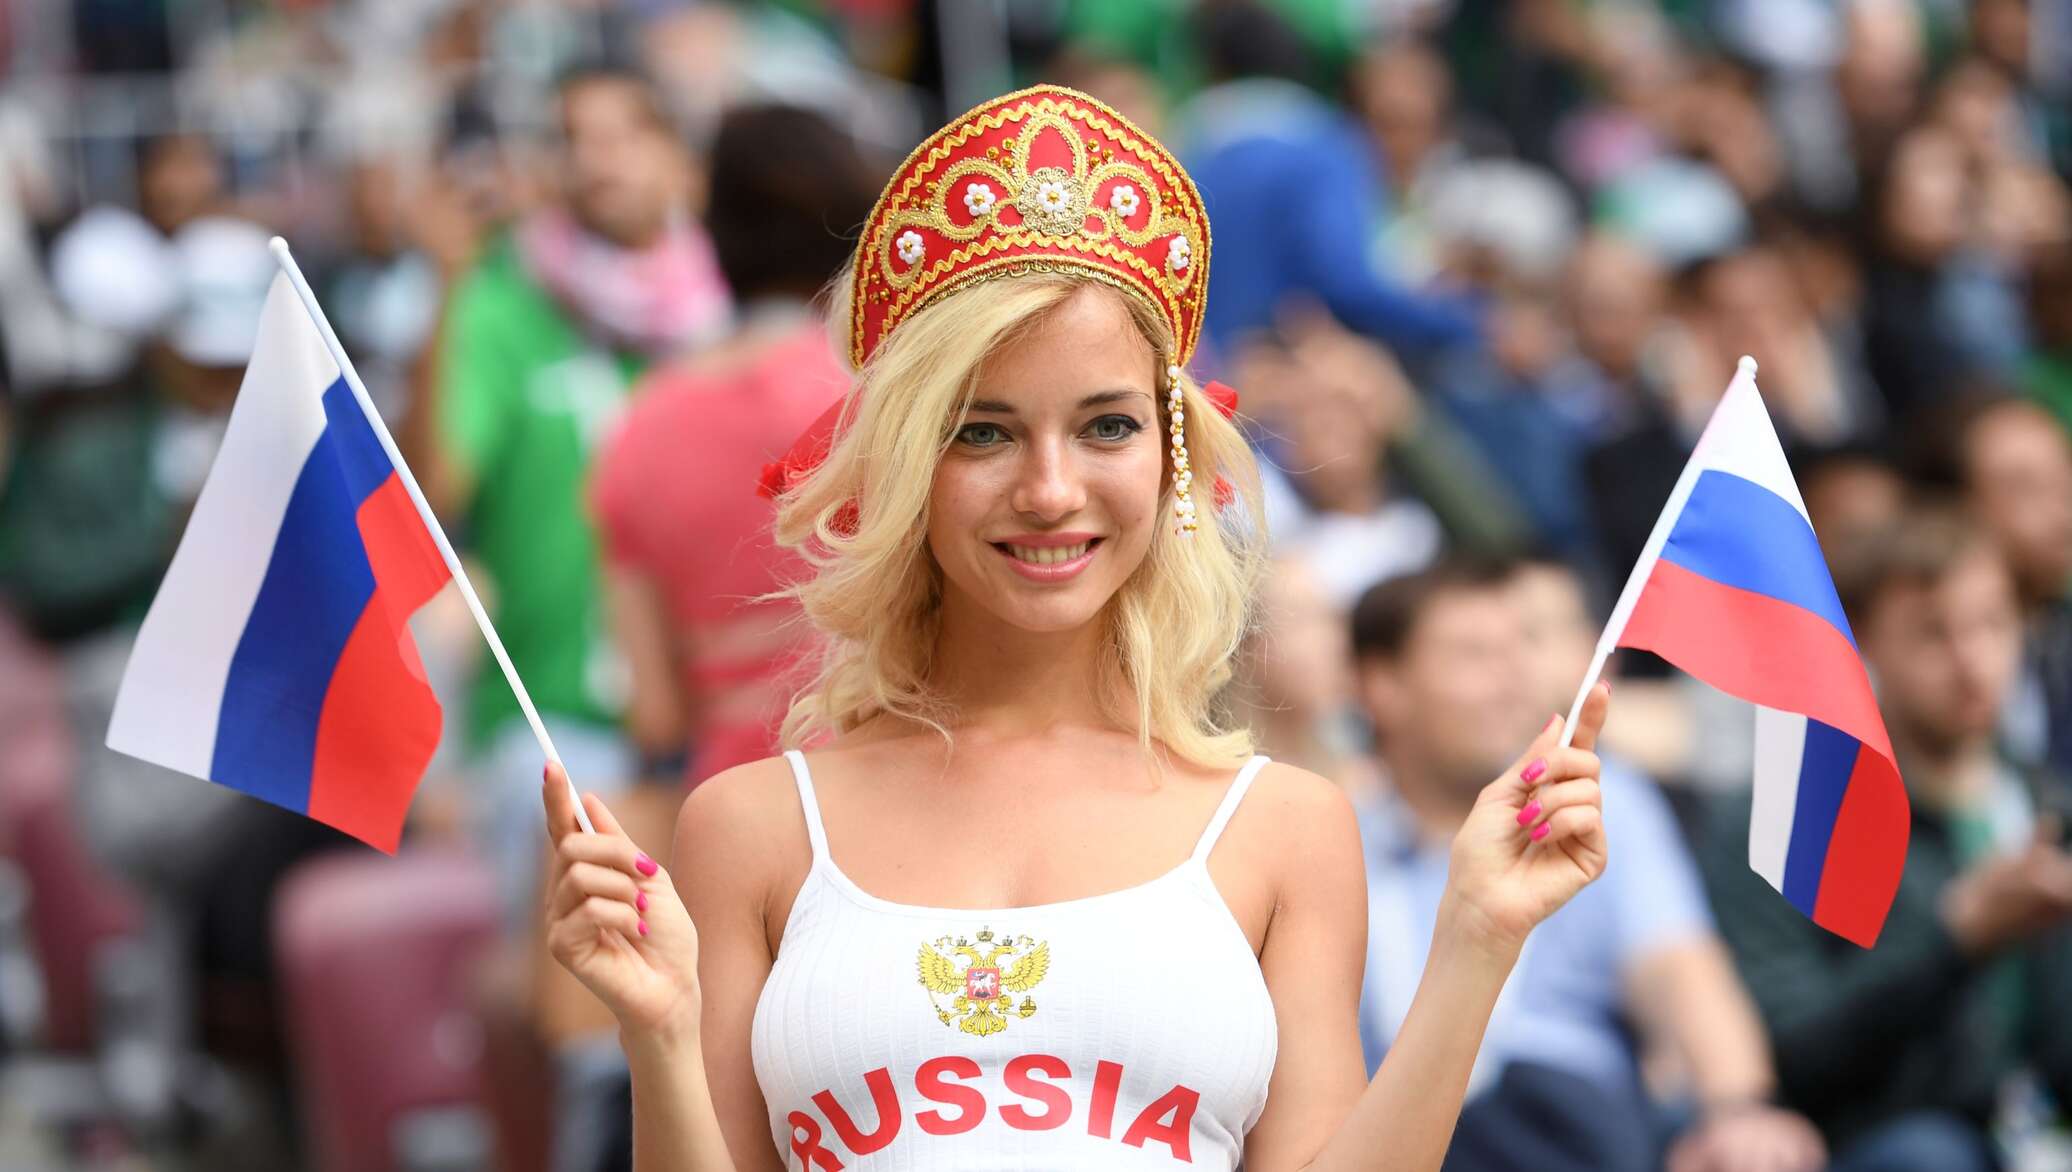 Самые красивые девушки в спорте россии